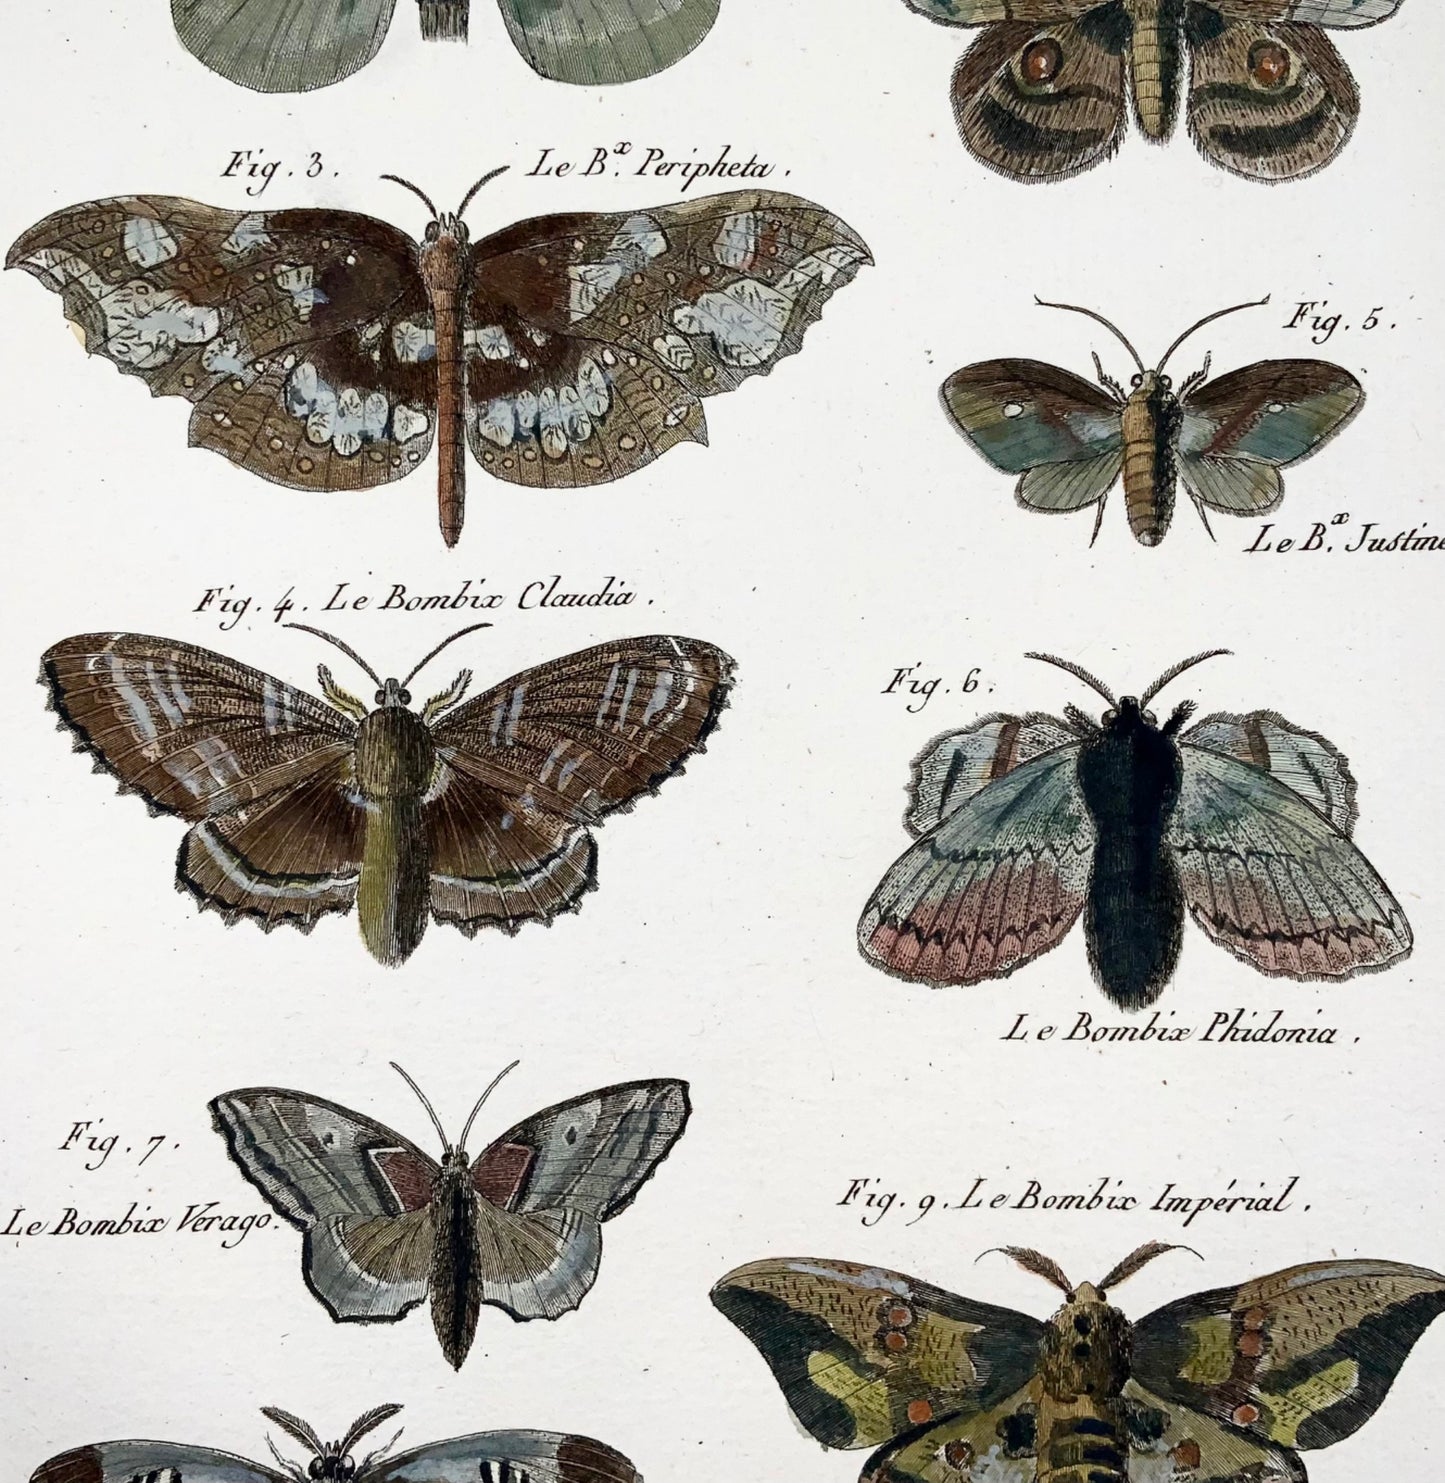 1794 Bombyx Silk Moths, Insects, Latreille, gravure sur cuivre in-quarto coloriée à la main